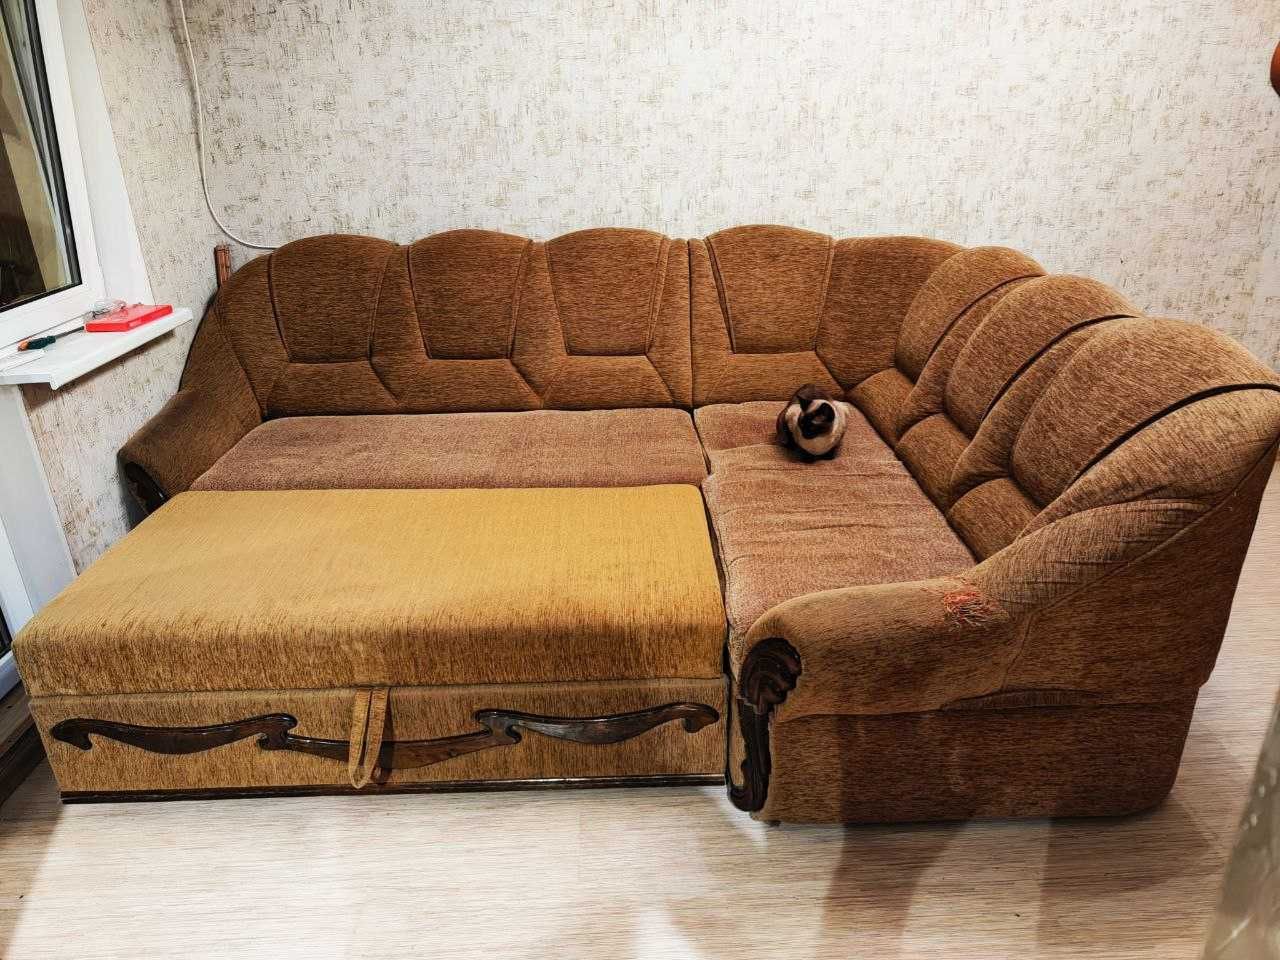 Продвм кутовий диван